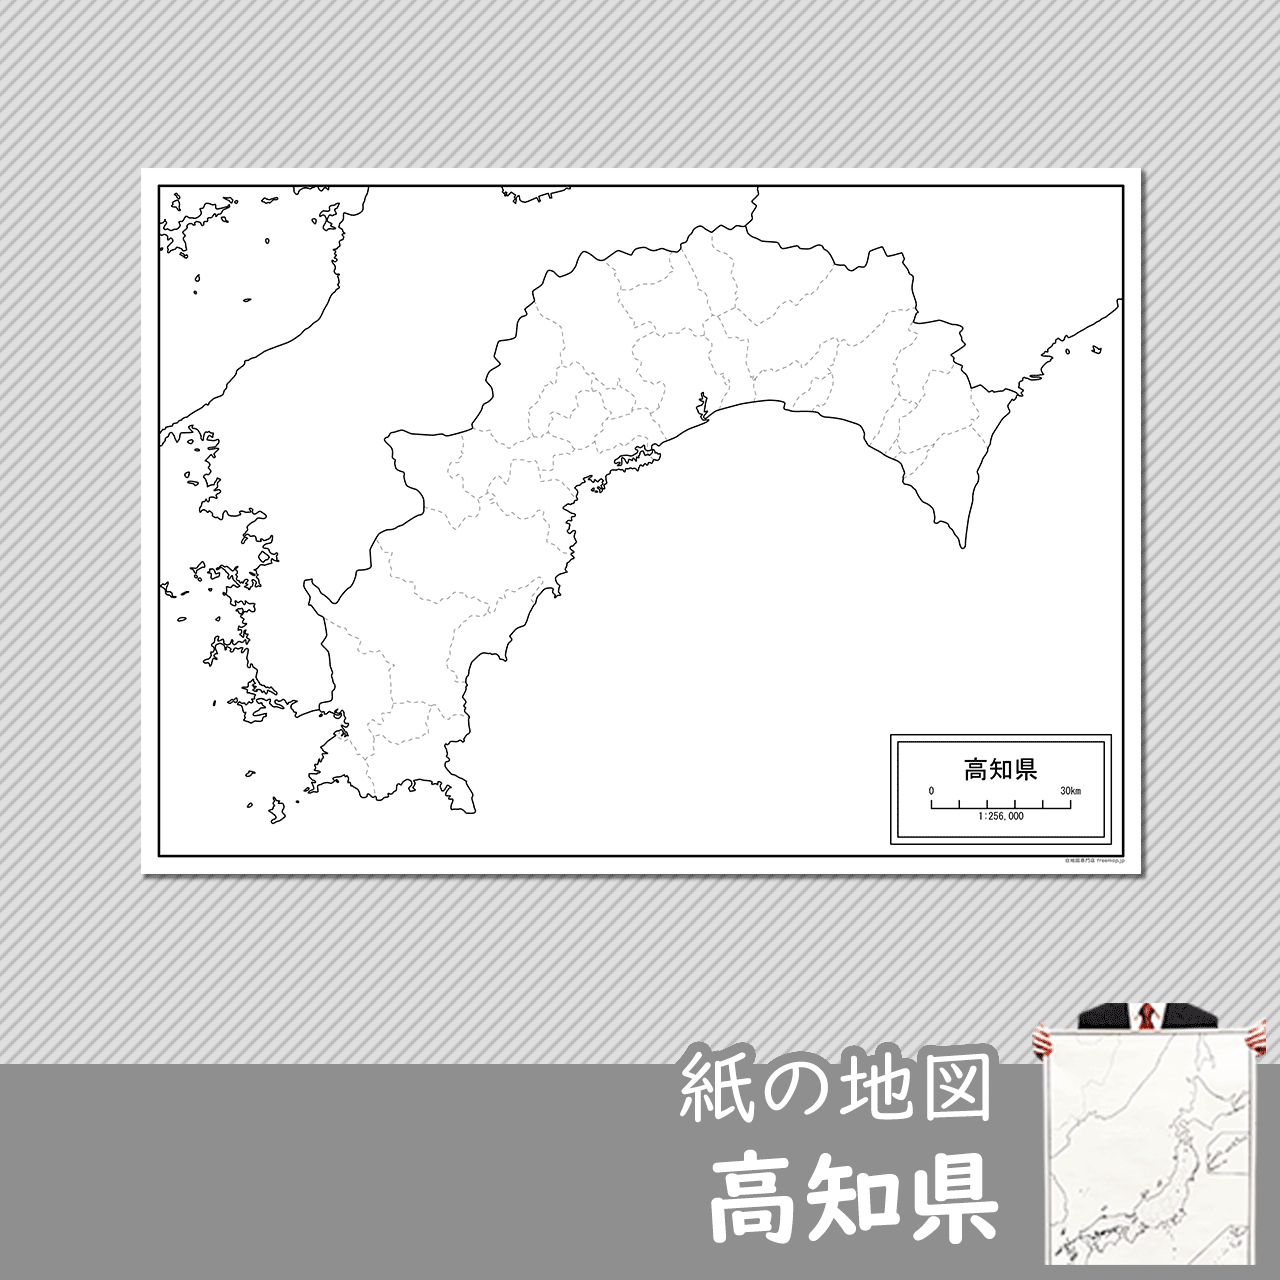 高知県の紙の白地図のサムネイル